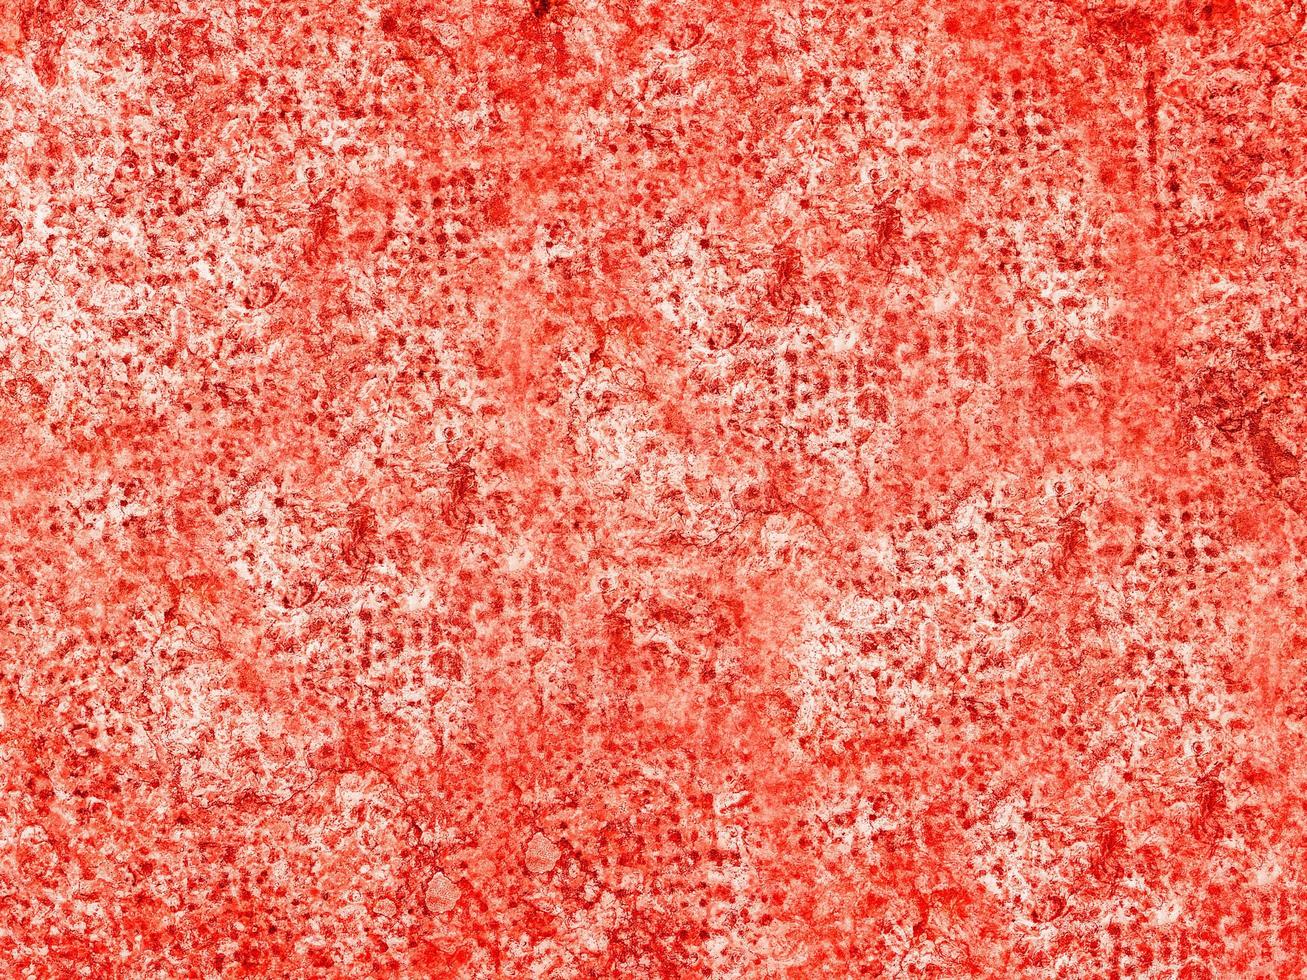 textura piedra roja foto